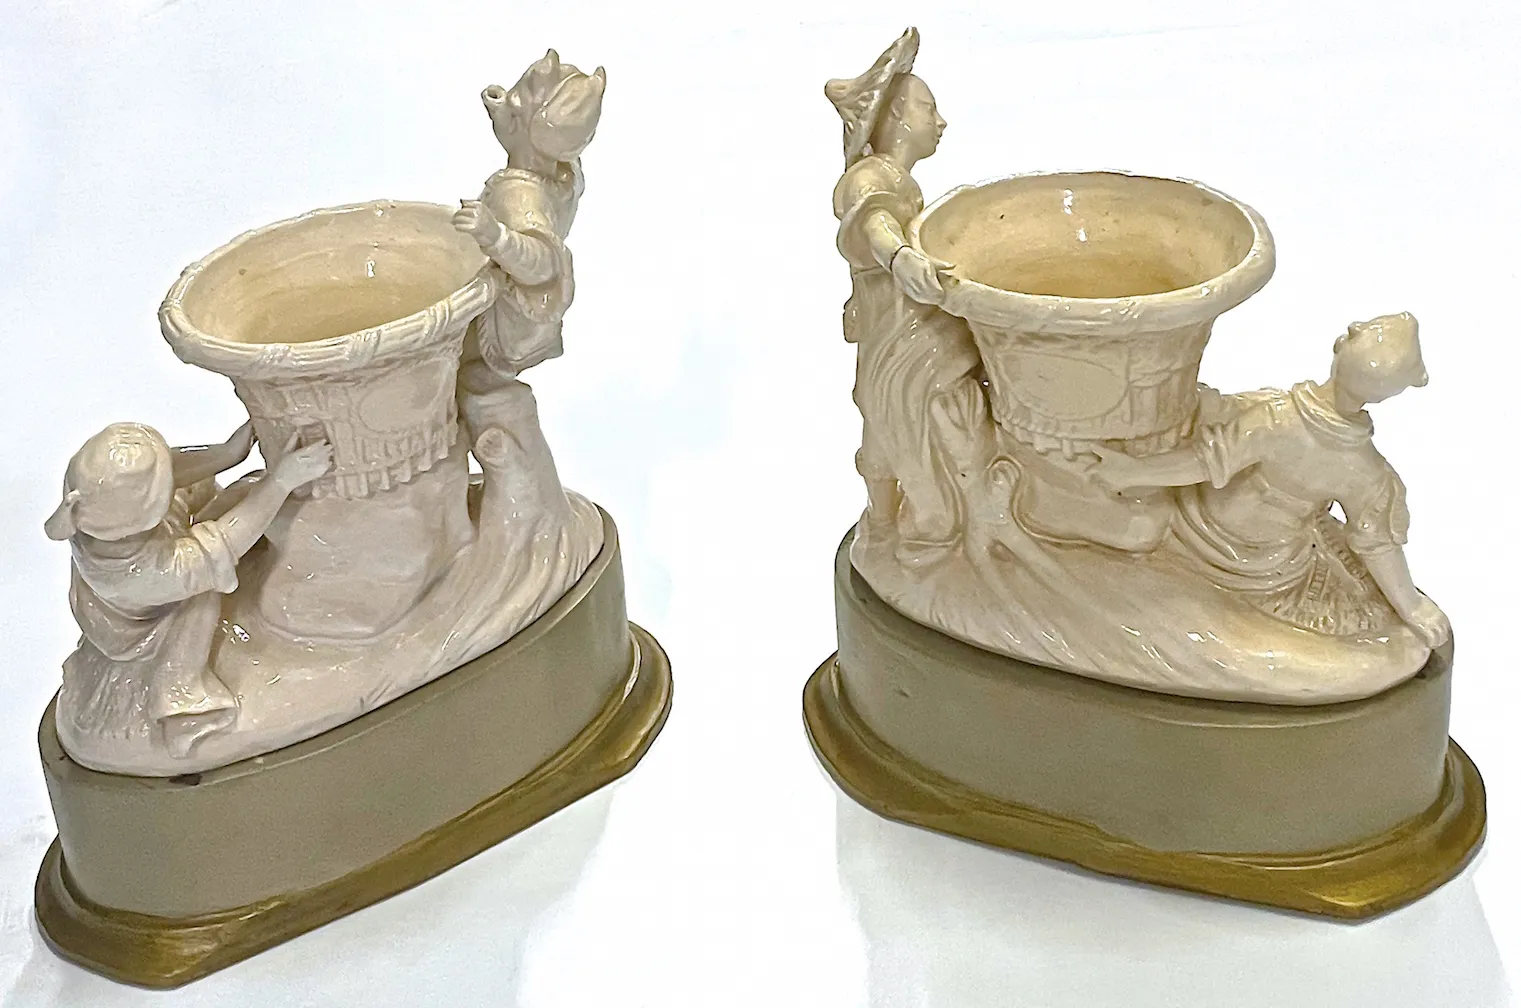 Chinoiserie Figurine Garniture Vases,Set of 2 - Vermilion Designs - Brown